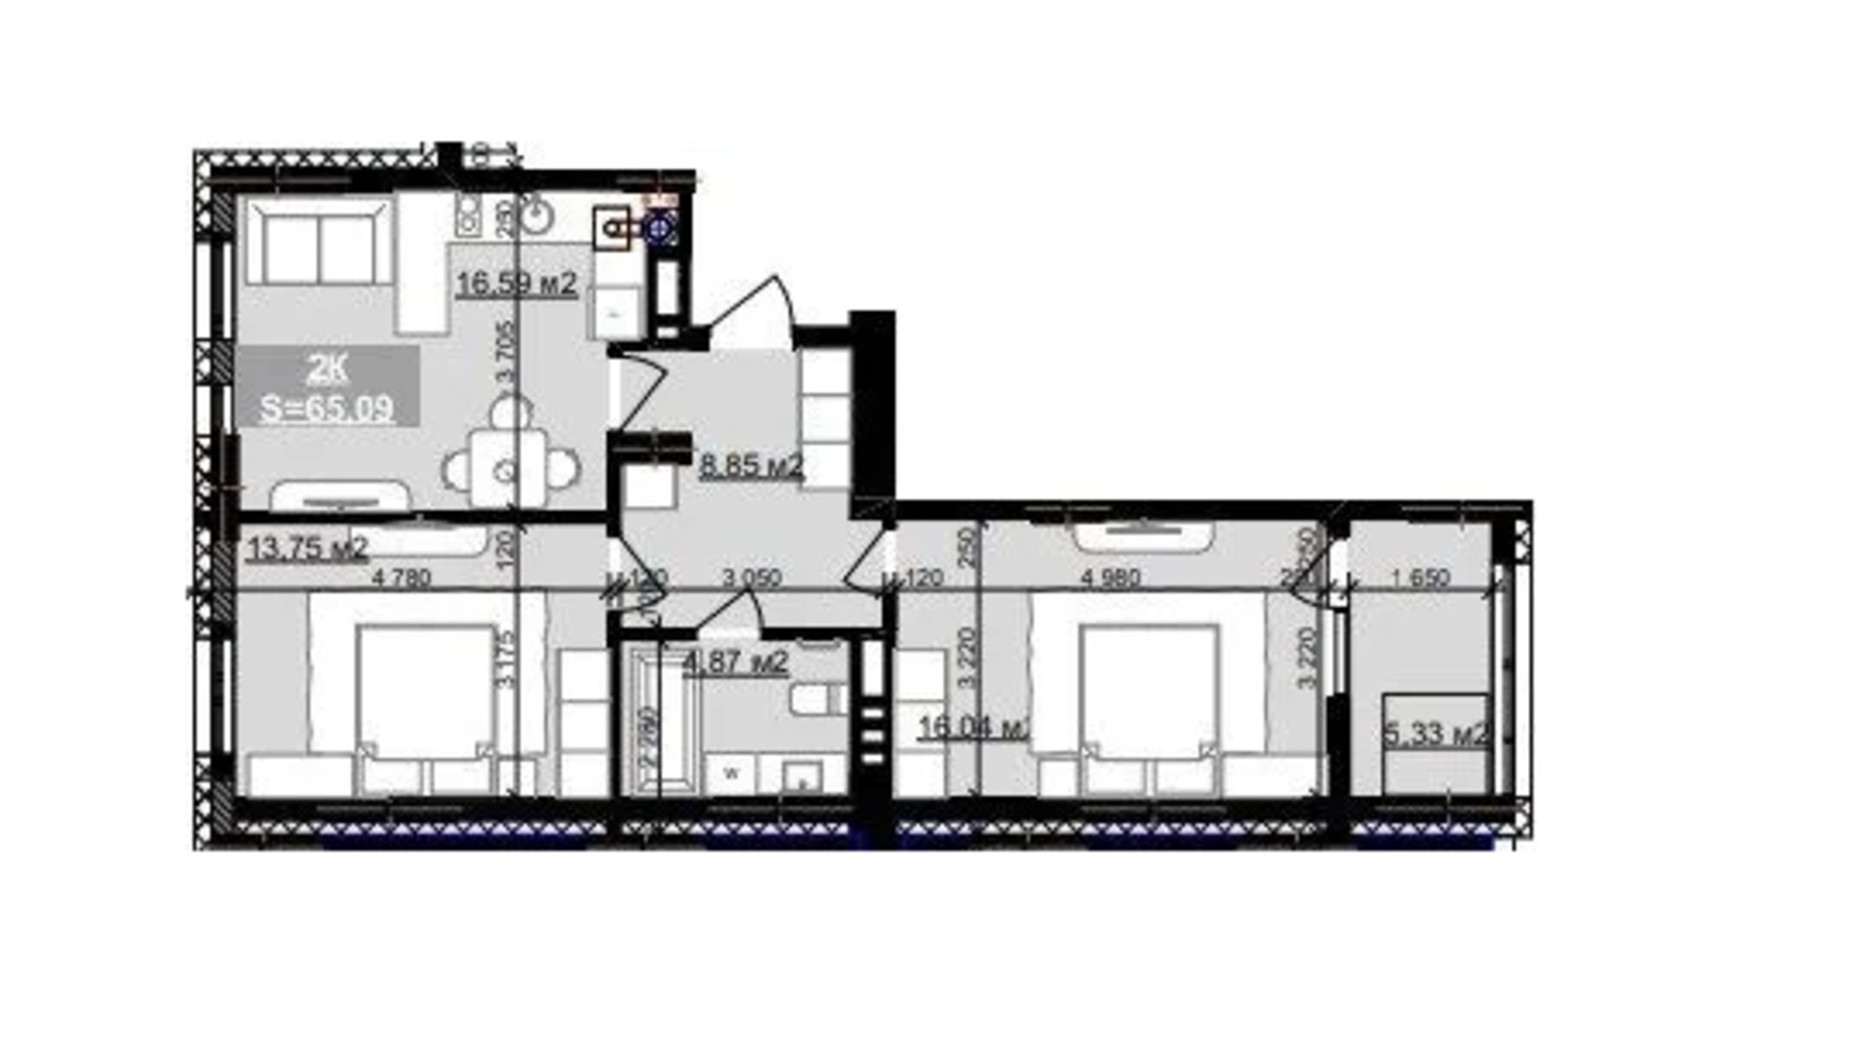 Планування 2-кімнатної квартири в ЖК Паркове містечко (7 черга) 65.09 м², фото 653525